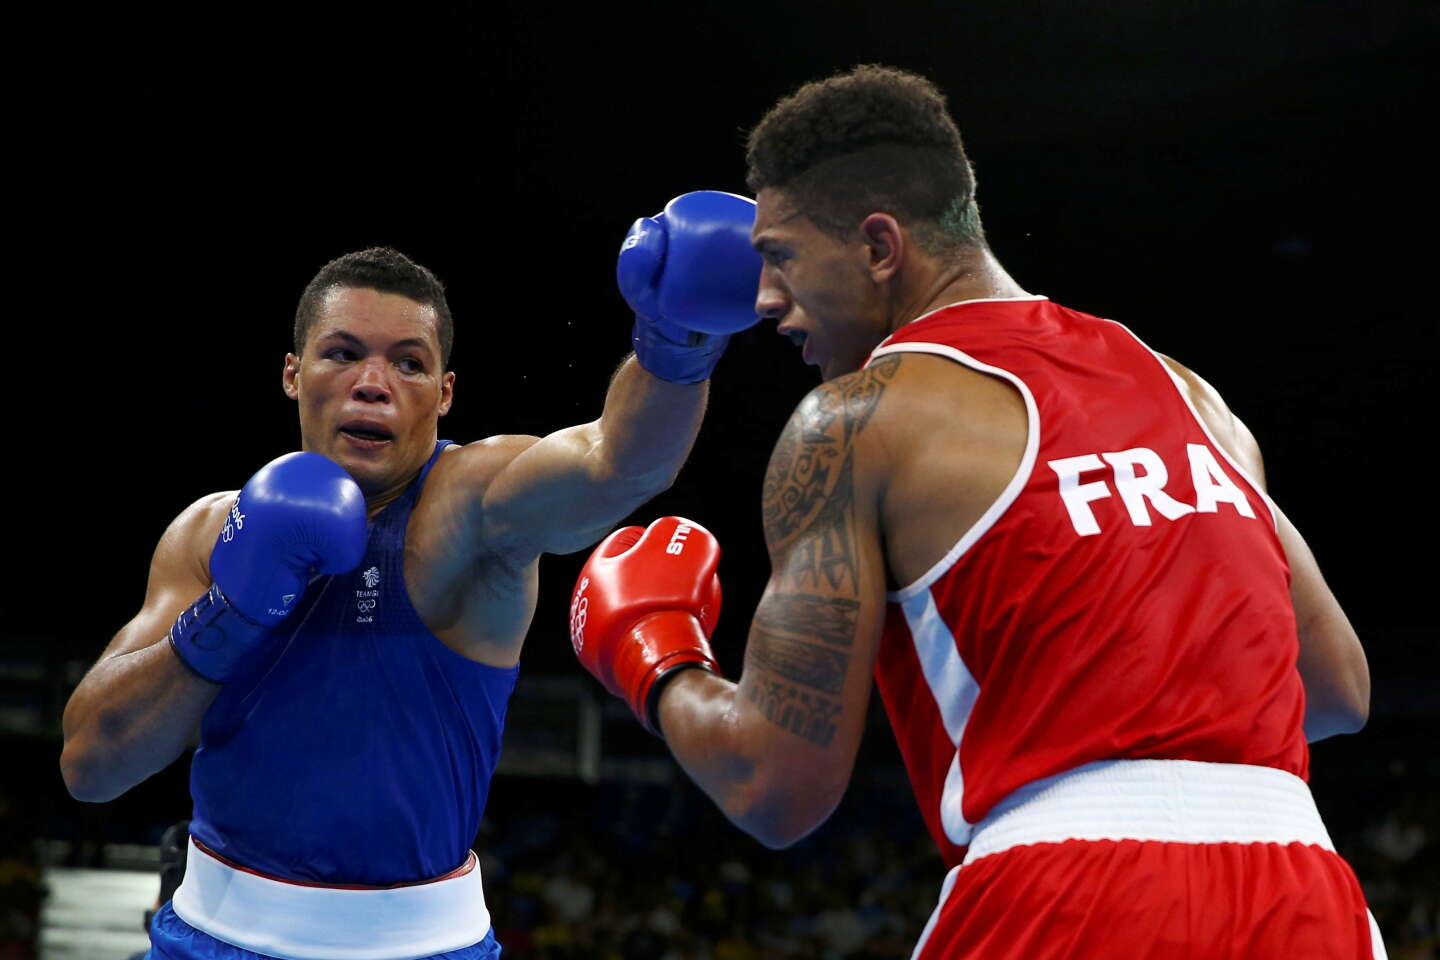 Boxe olympique vs boxe professionnelle : Quelles sont les